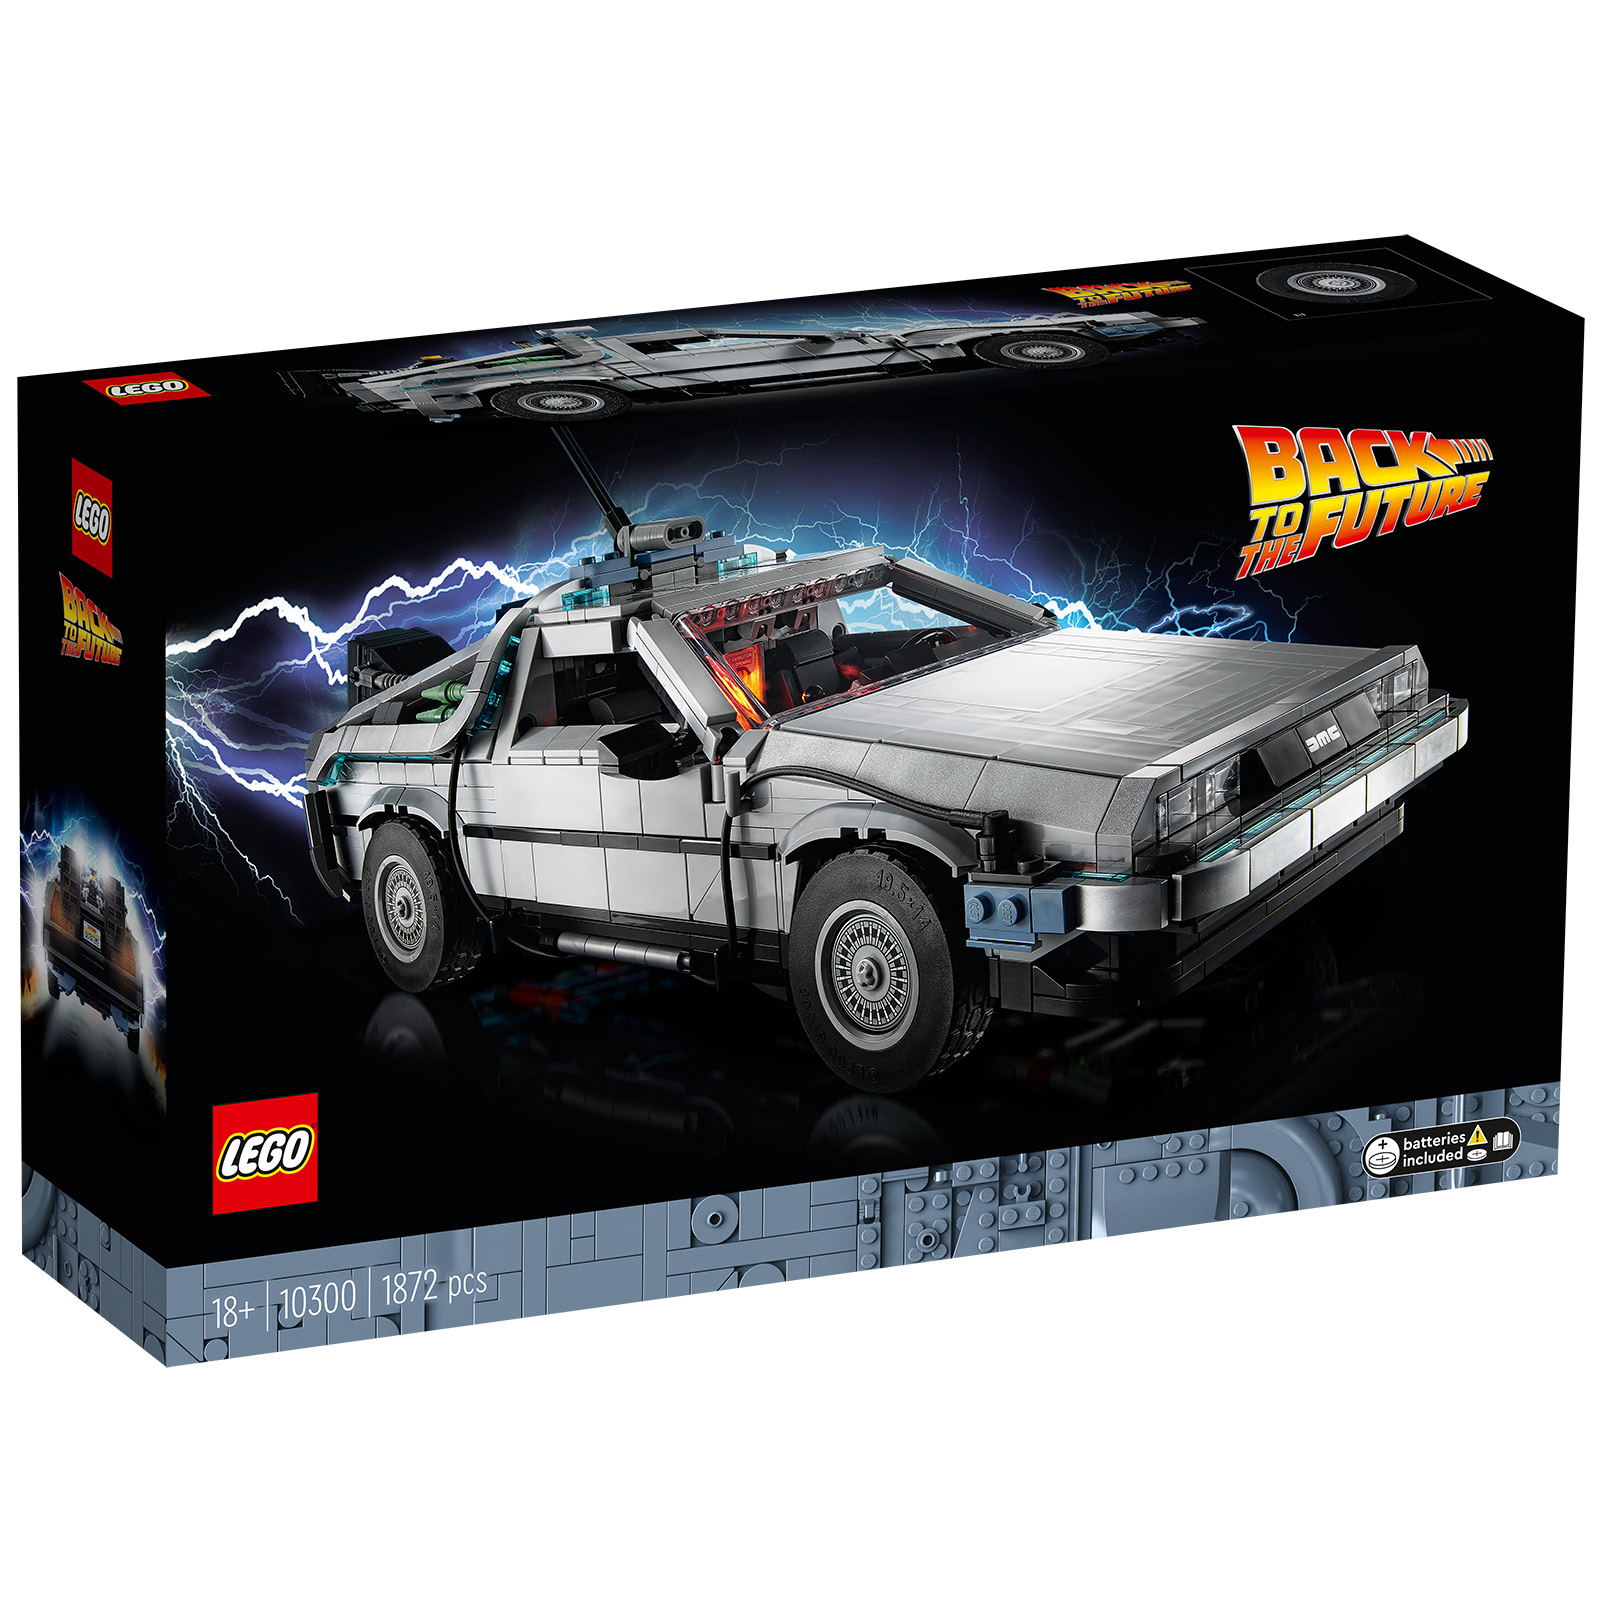 LEGO 10300 Back to the Future Time Machine: aktuálně doplňováno v obchodě